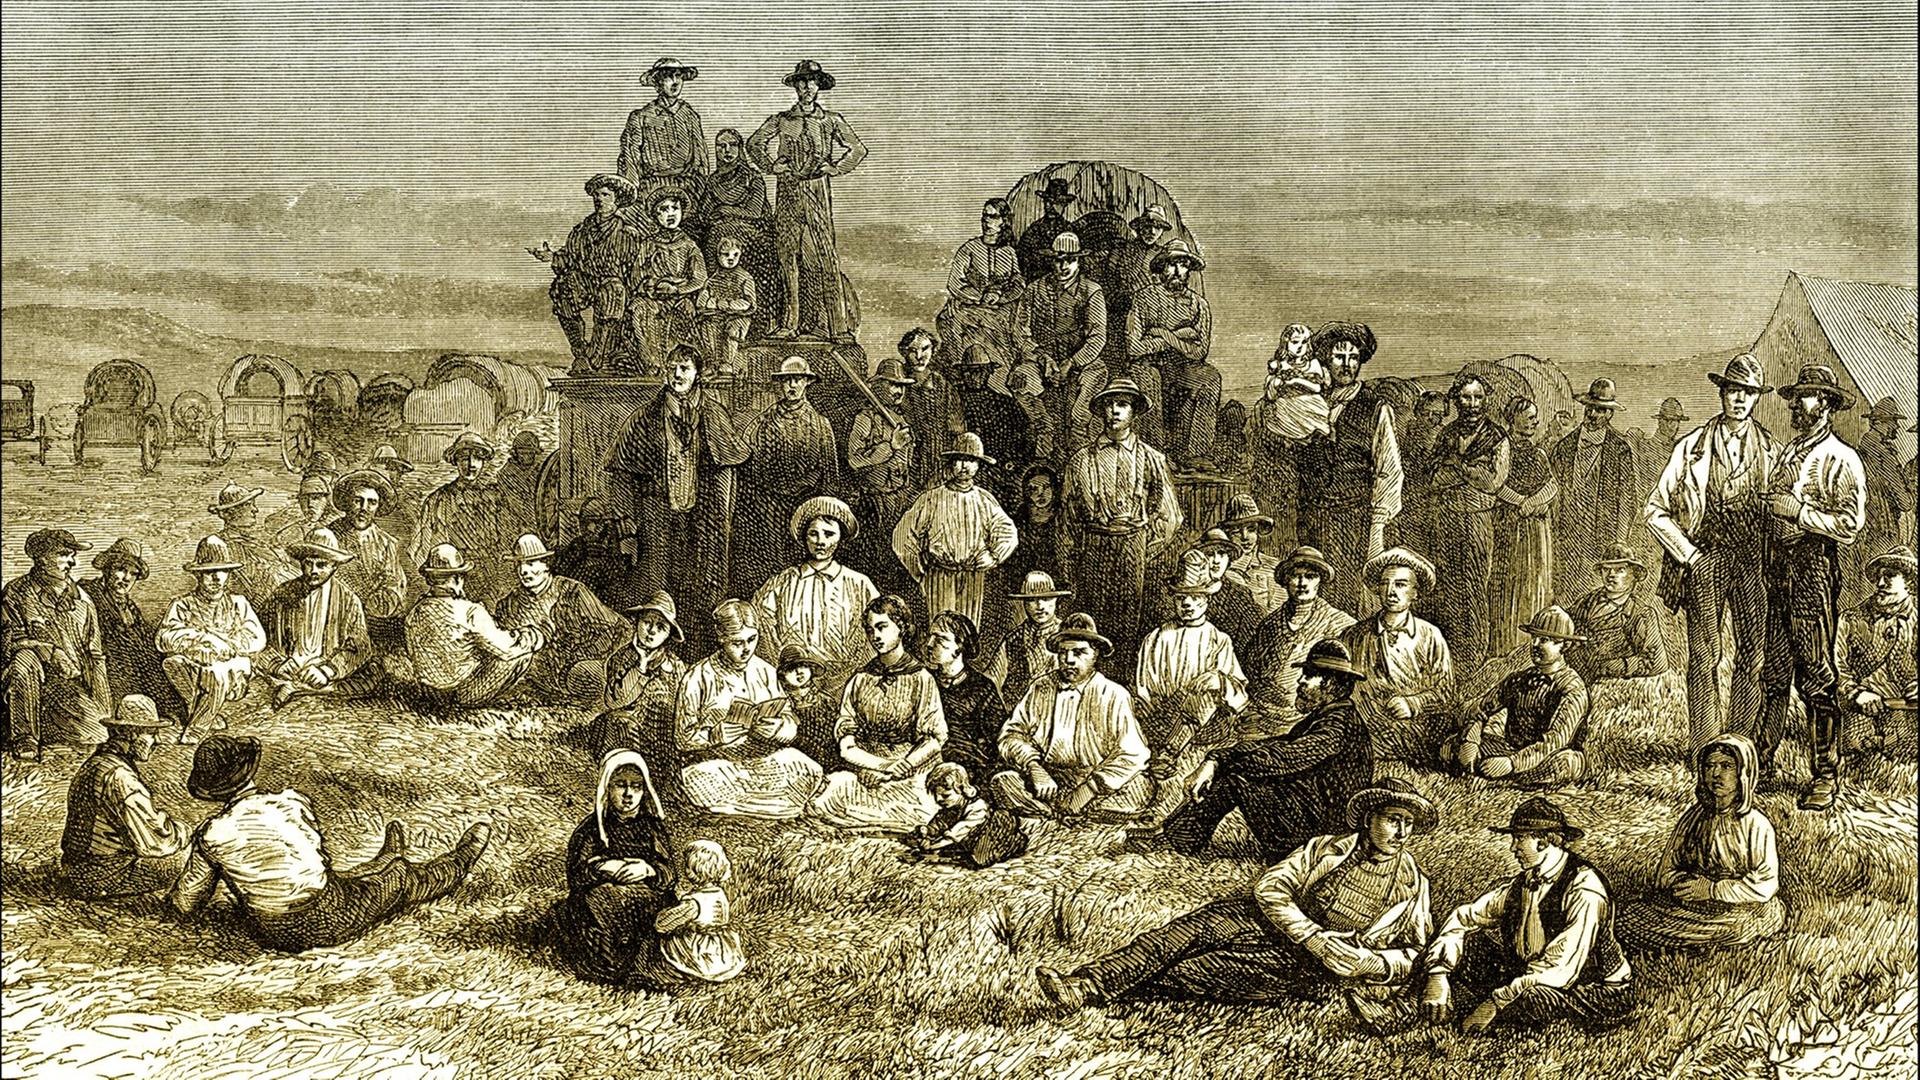 Historische Szene aus den USA: Feldlager oder Versammlung der Mormonen oder der Kirche Jesu Christi der Heiligen der Letzten Tage um 1840 (Reproduktion).